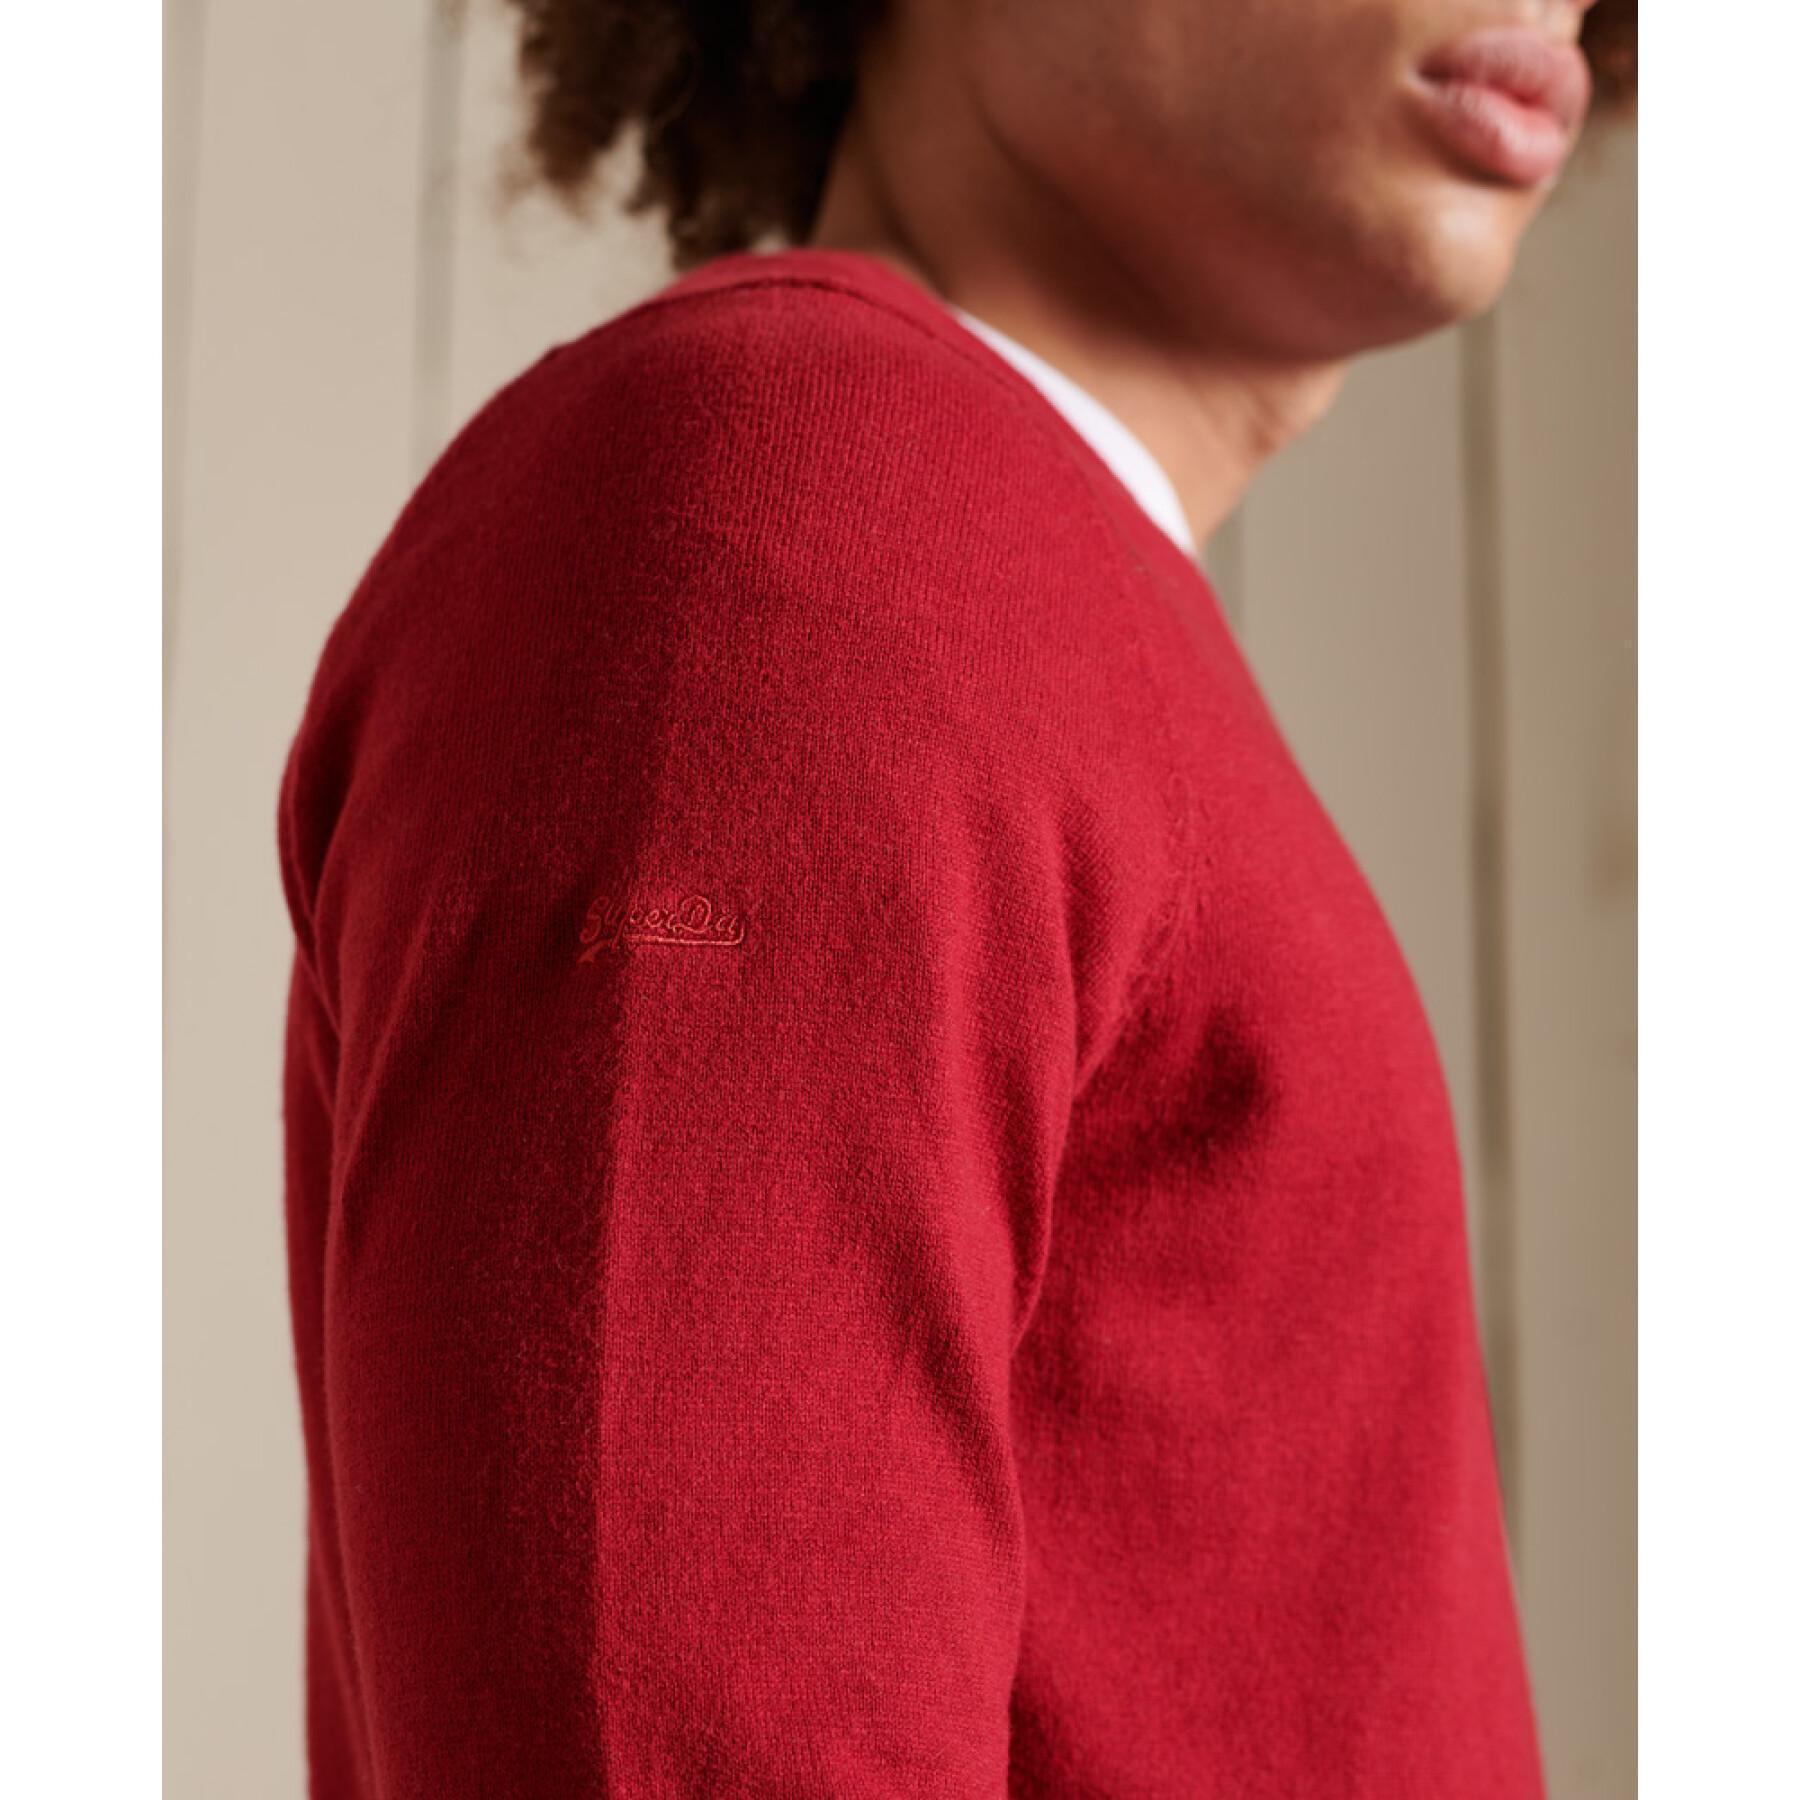 Sweater Superdry Vintage en cachemire et coton bio